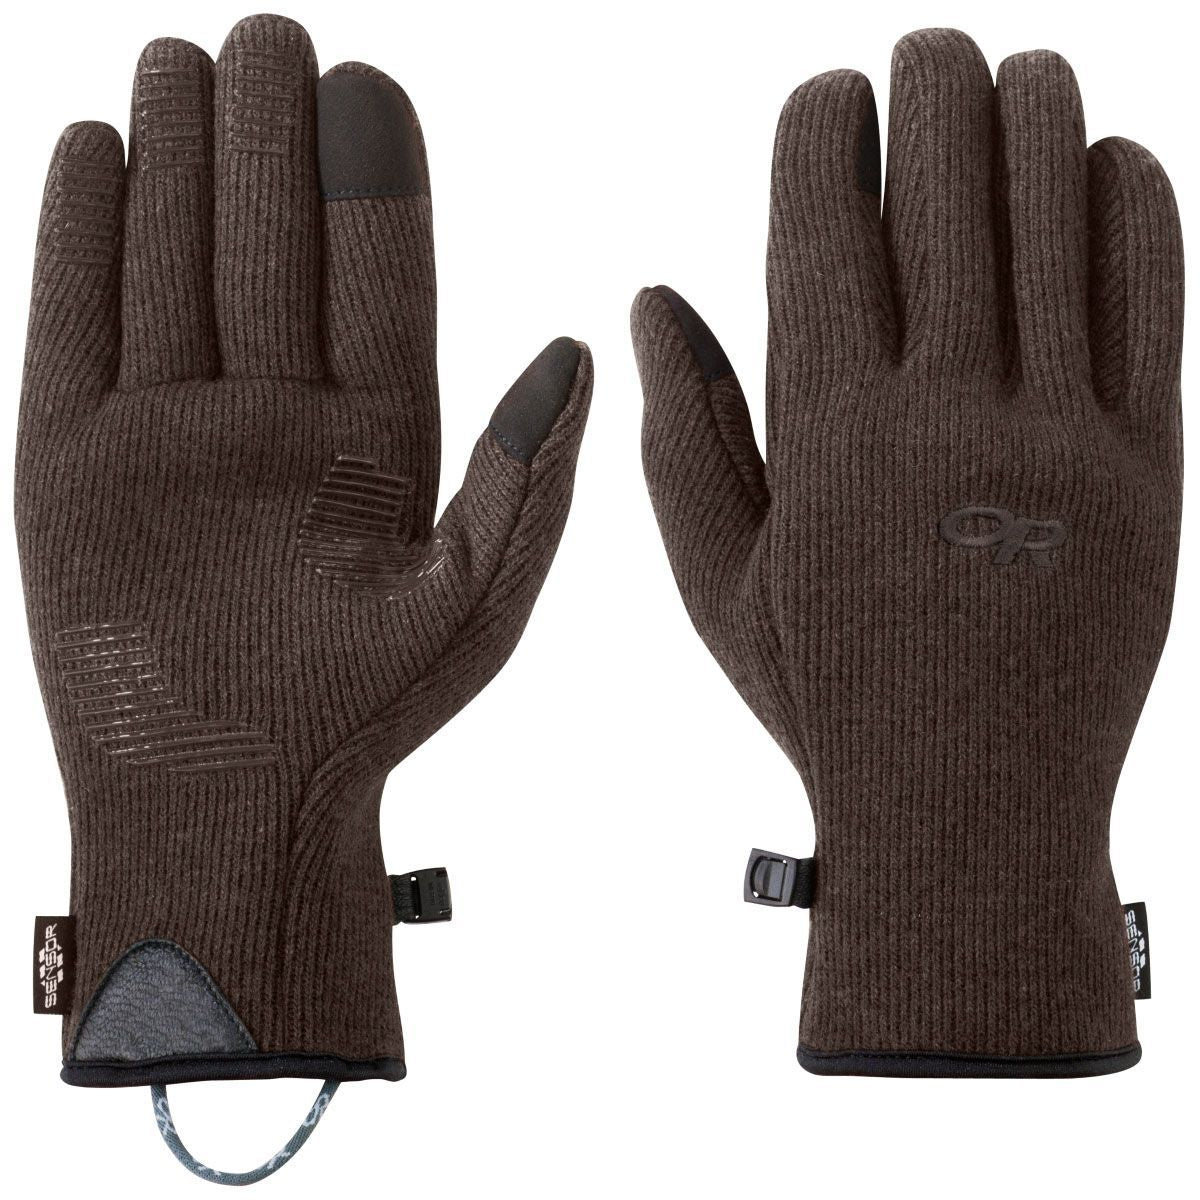 Outdoor Research Men's Flurry Sensor Gloves - Ascent Outdoors LLC